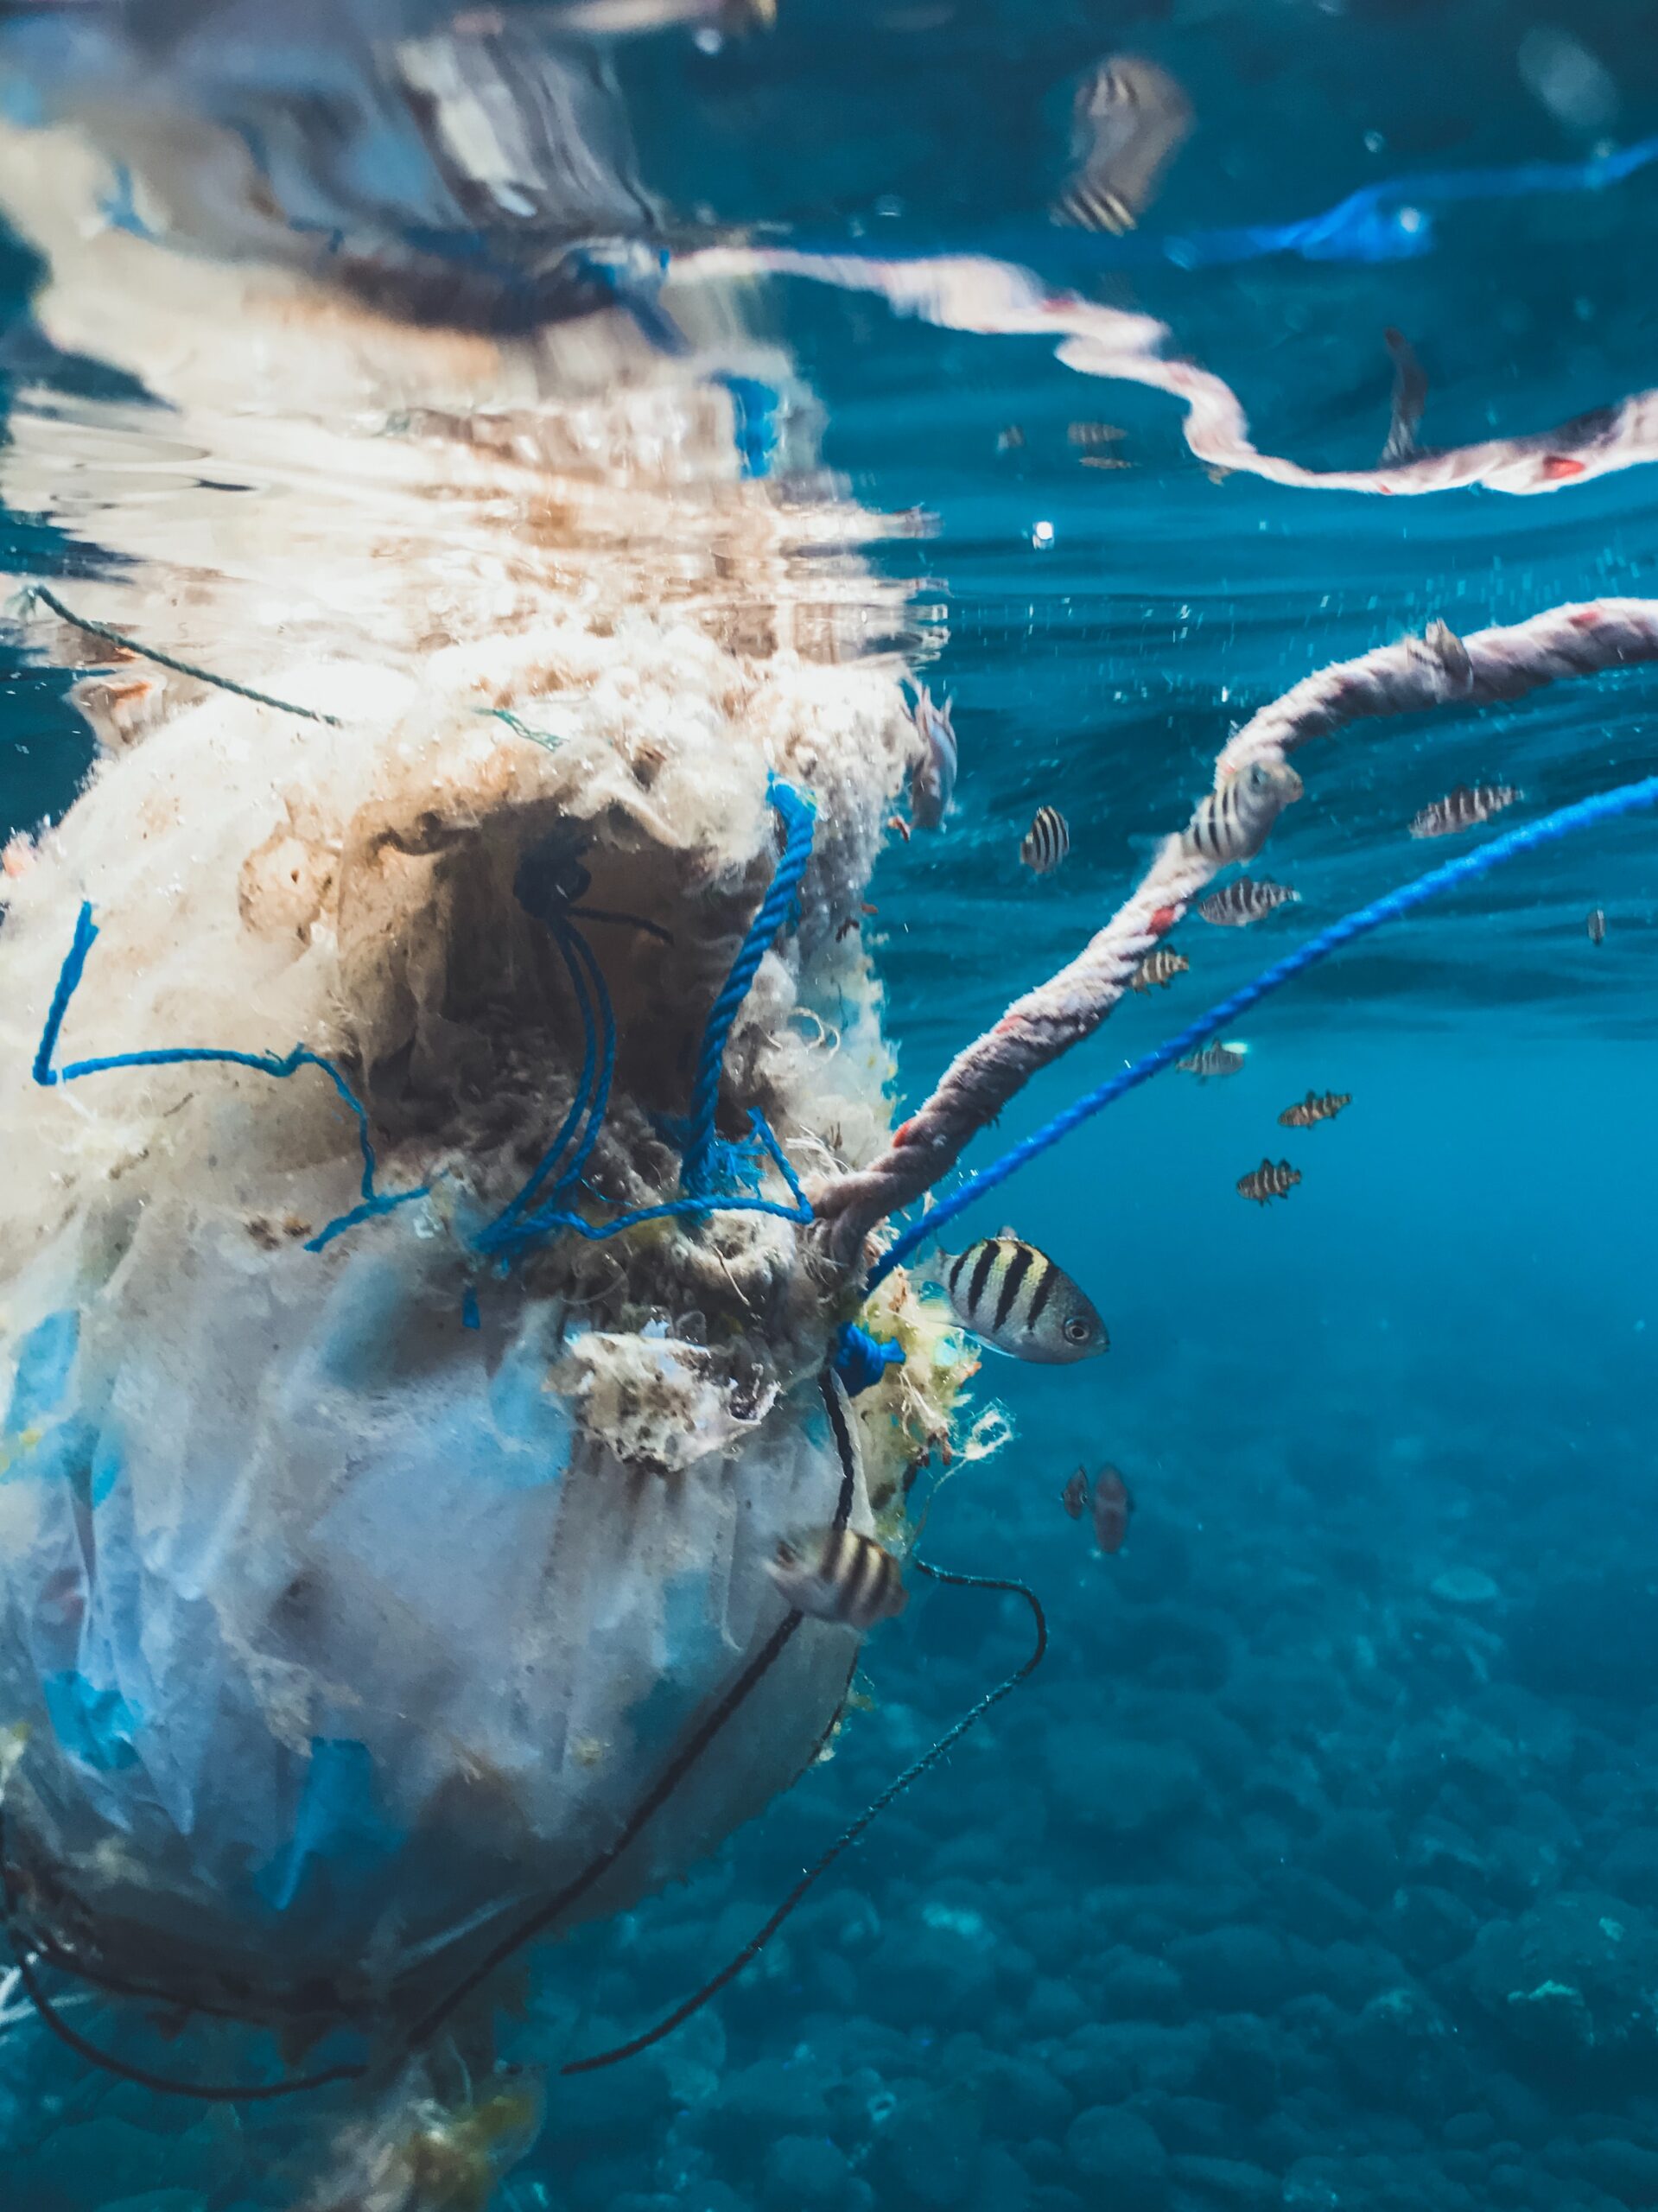 24.400 milliards de microplastiques dérivent sur nos océans !